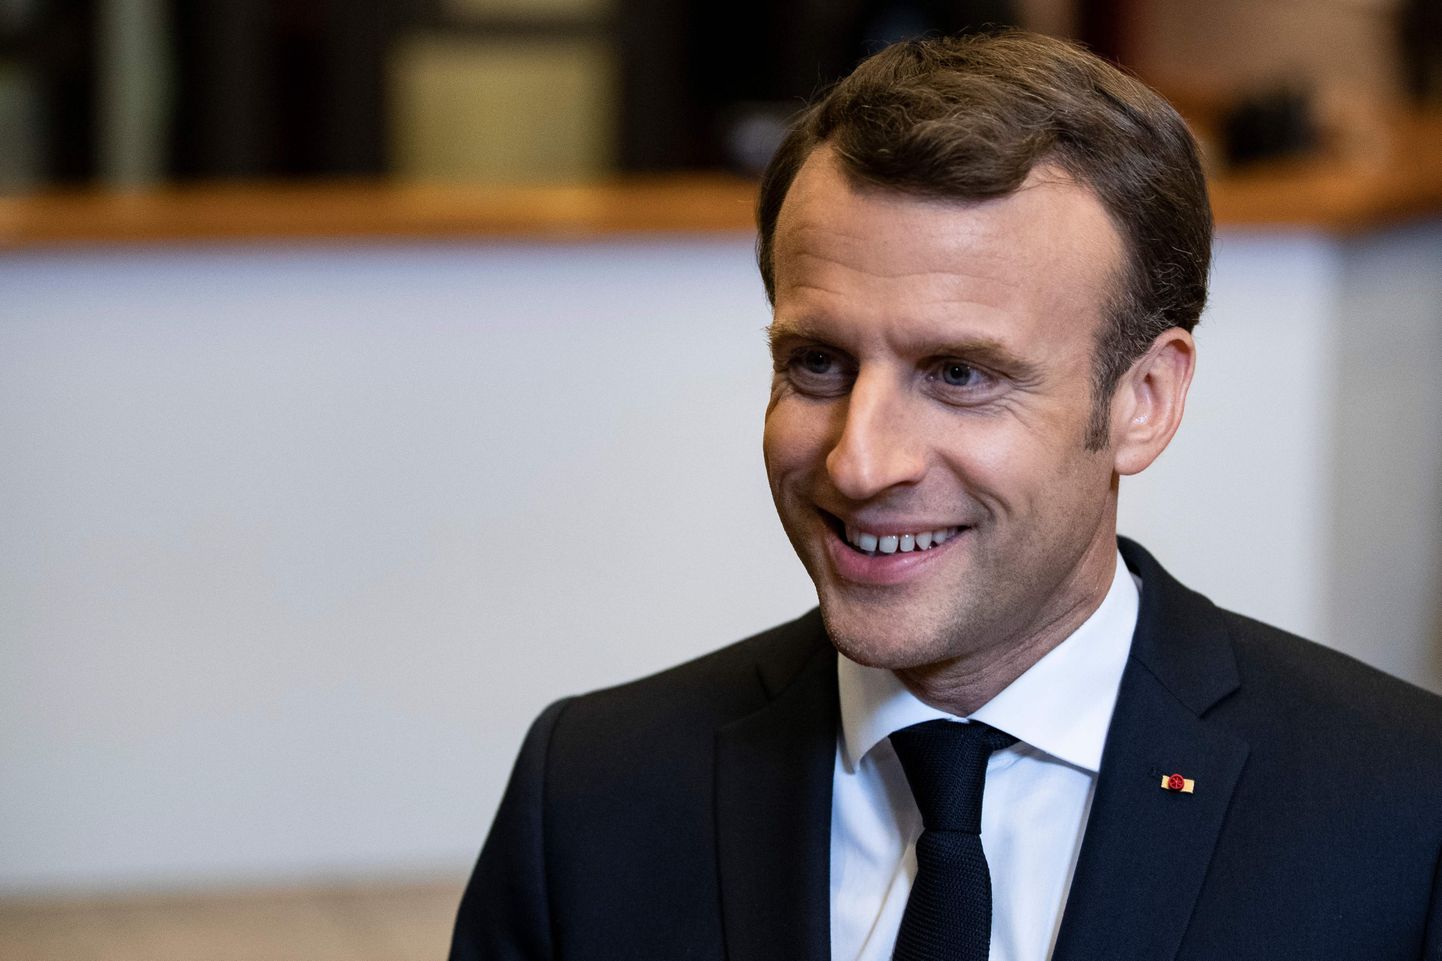 Prantsuse president Emmanuel Macron ööl vastu neljapäeva Brüsselis pärast Euroopa Liidu erakorralist tippkohtumist ajakirjanikega rääkimas.